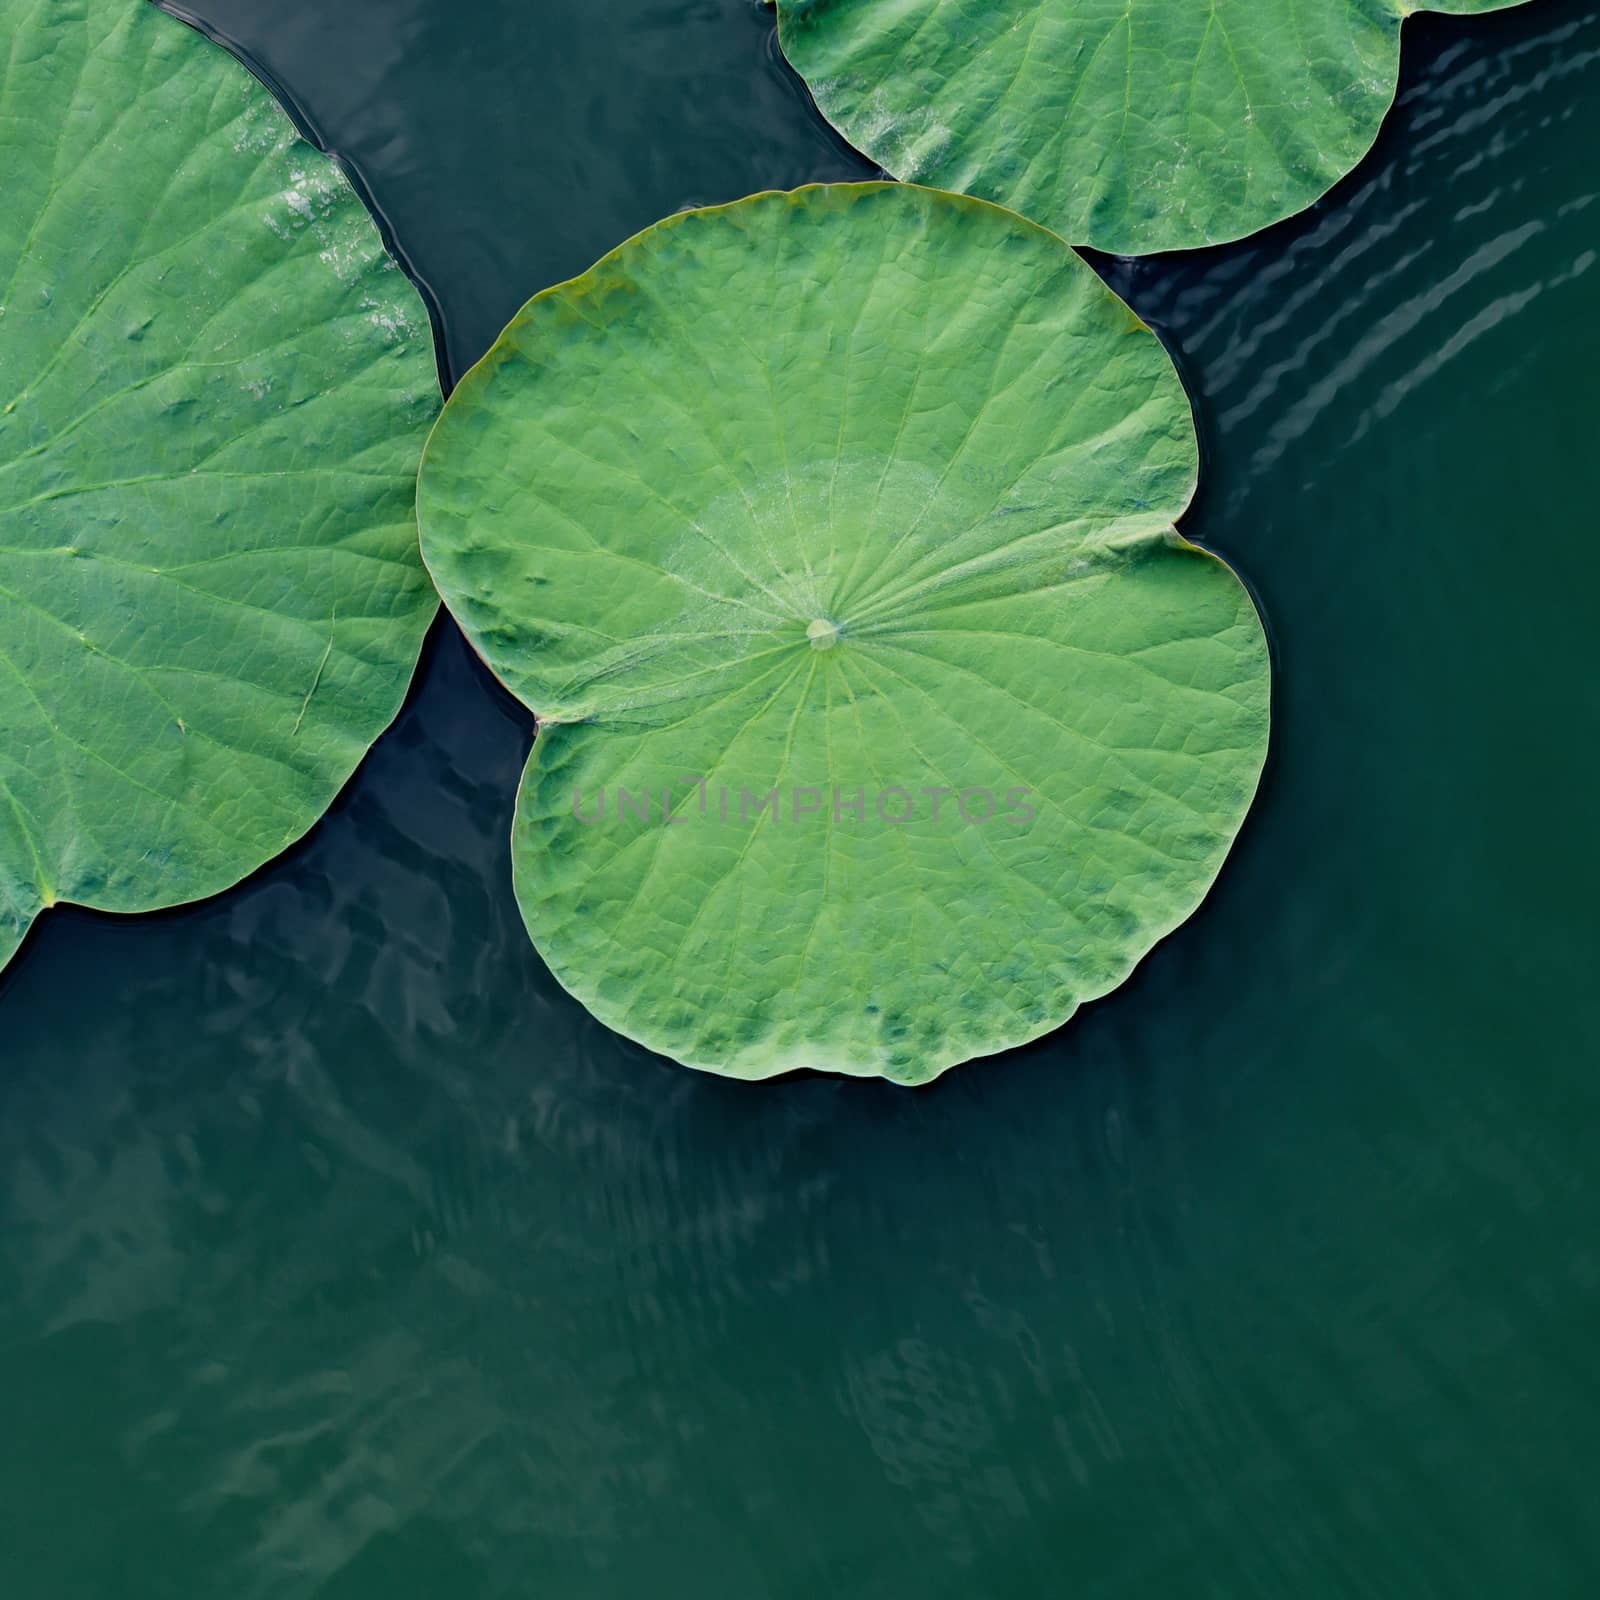 Green lotus leaf in the lake. by kerdkanno